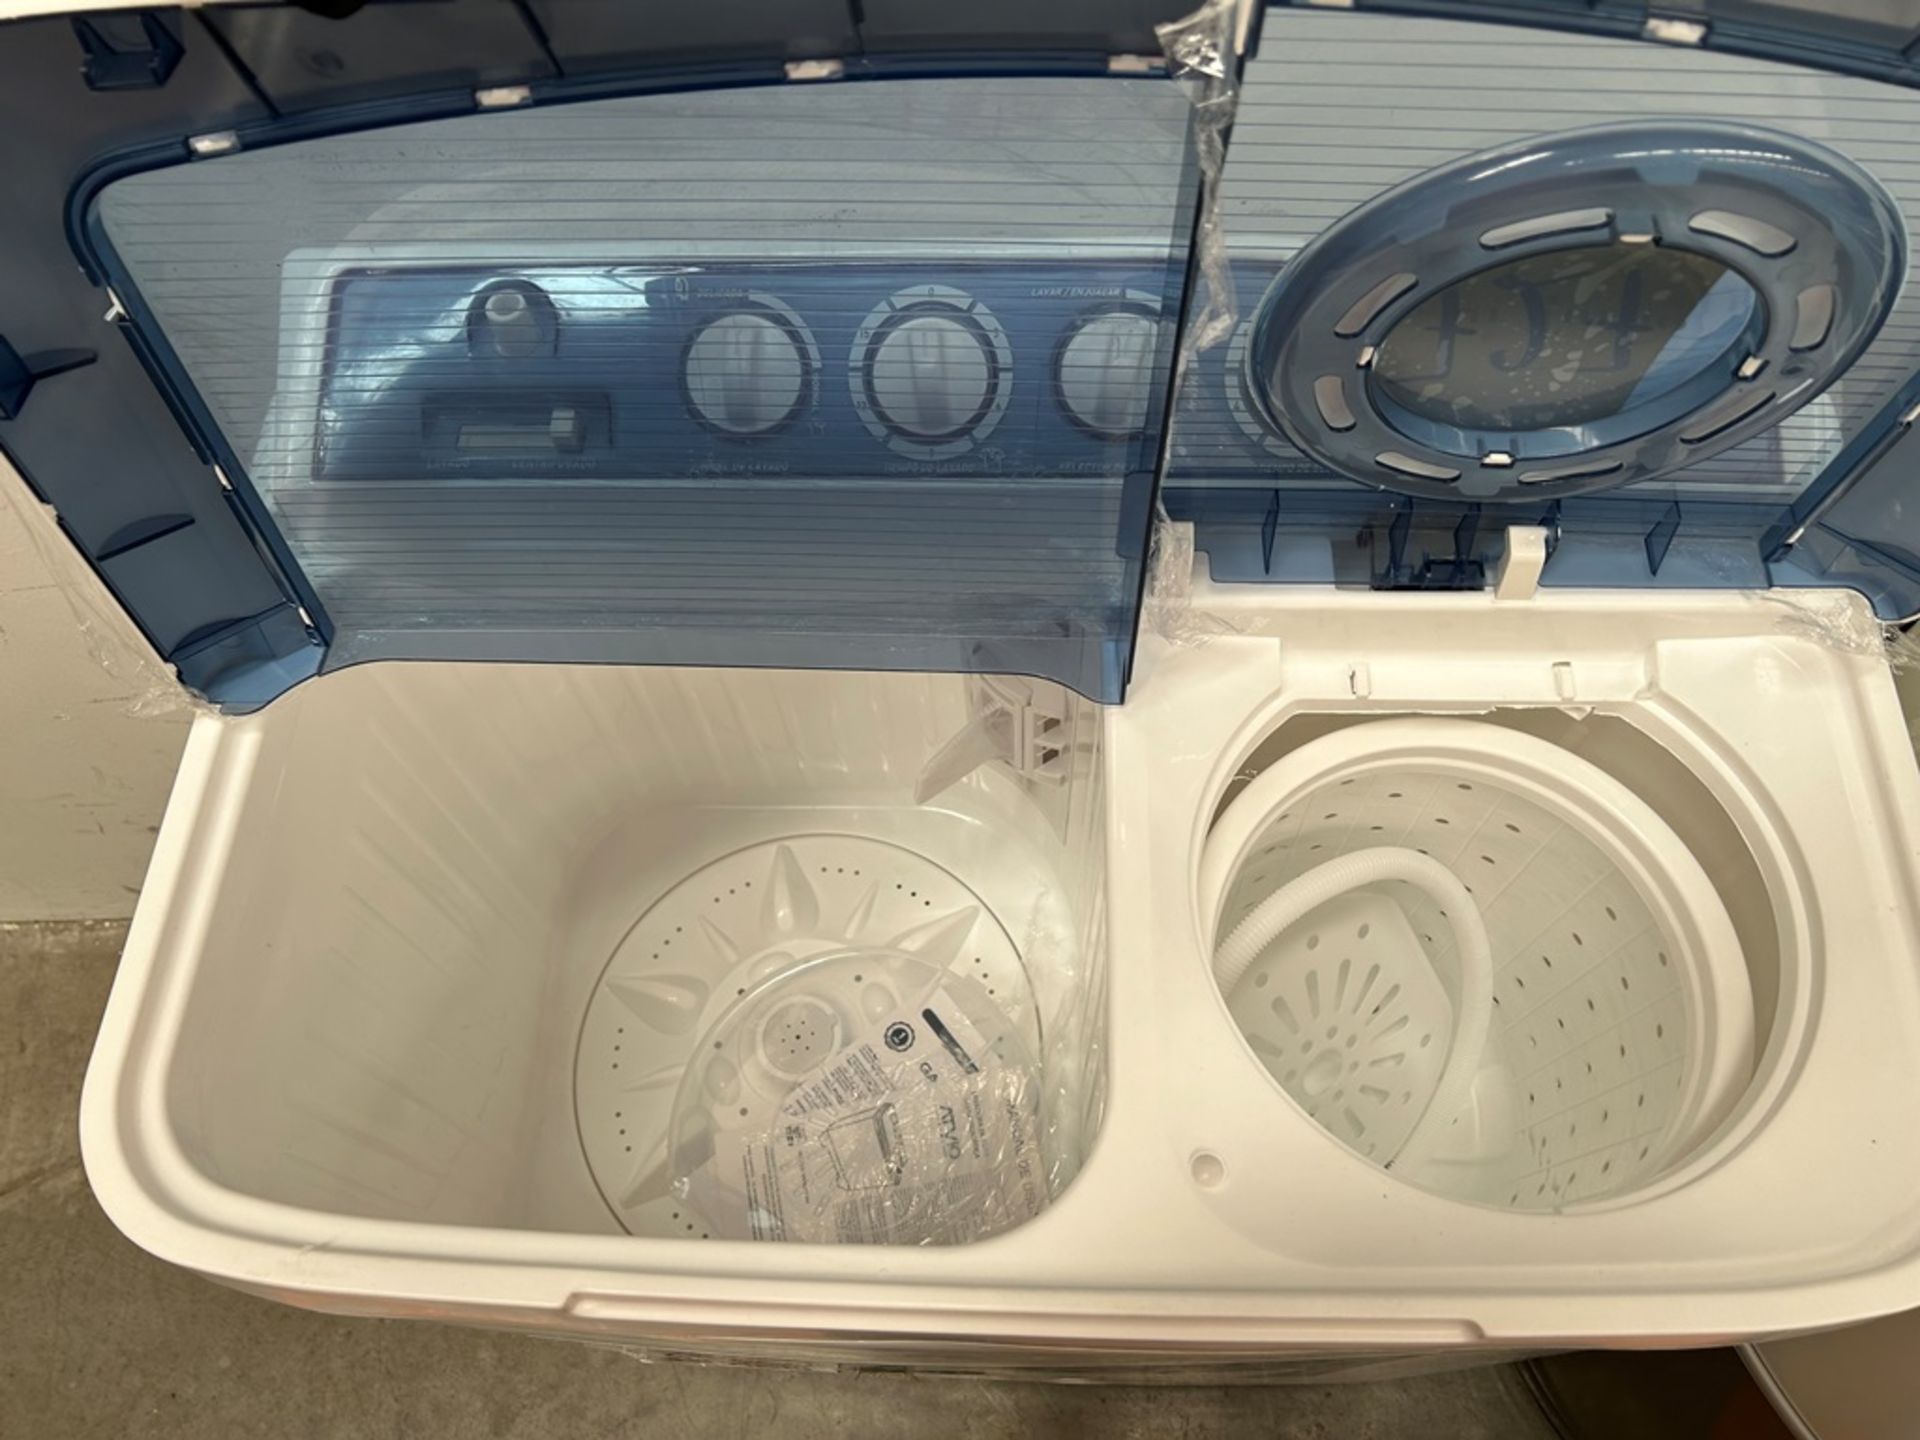 Lote de 3 lavadoras contiene: 1 Lavadora de 21 KG, Marca KOBLENZ, Modelo LRKF21P, Serie 31522, Colo - Image 7 of 13